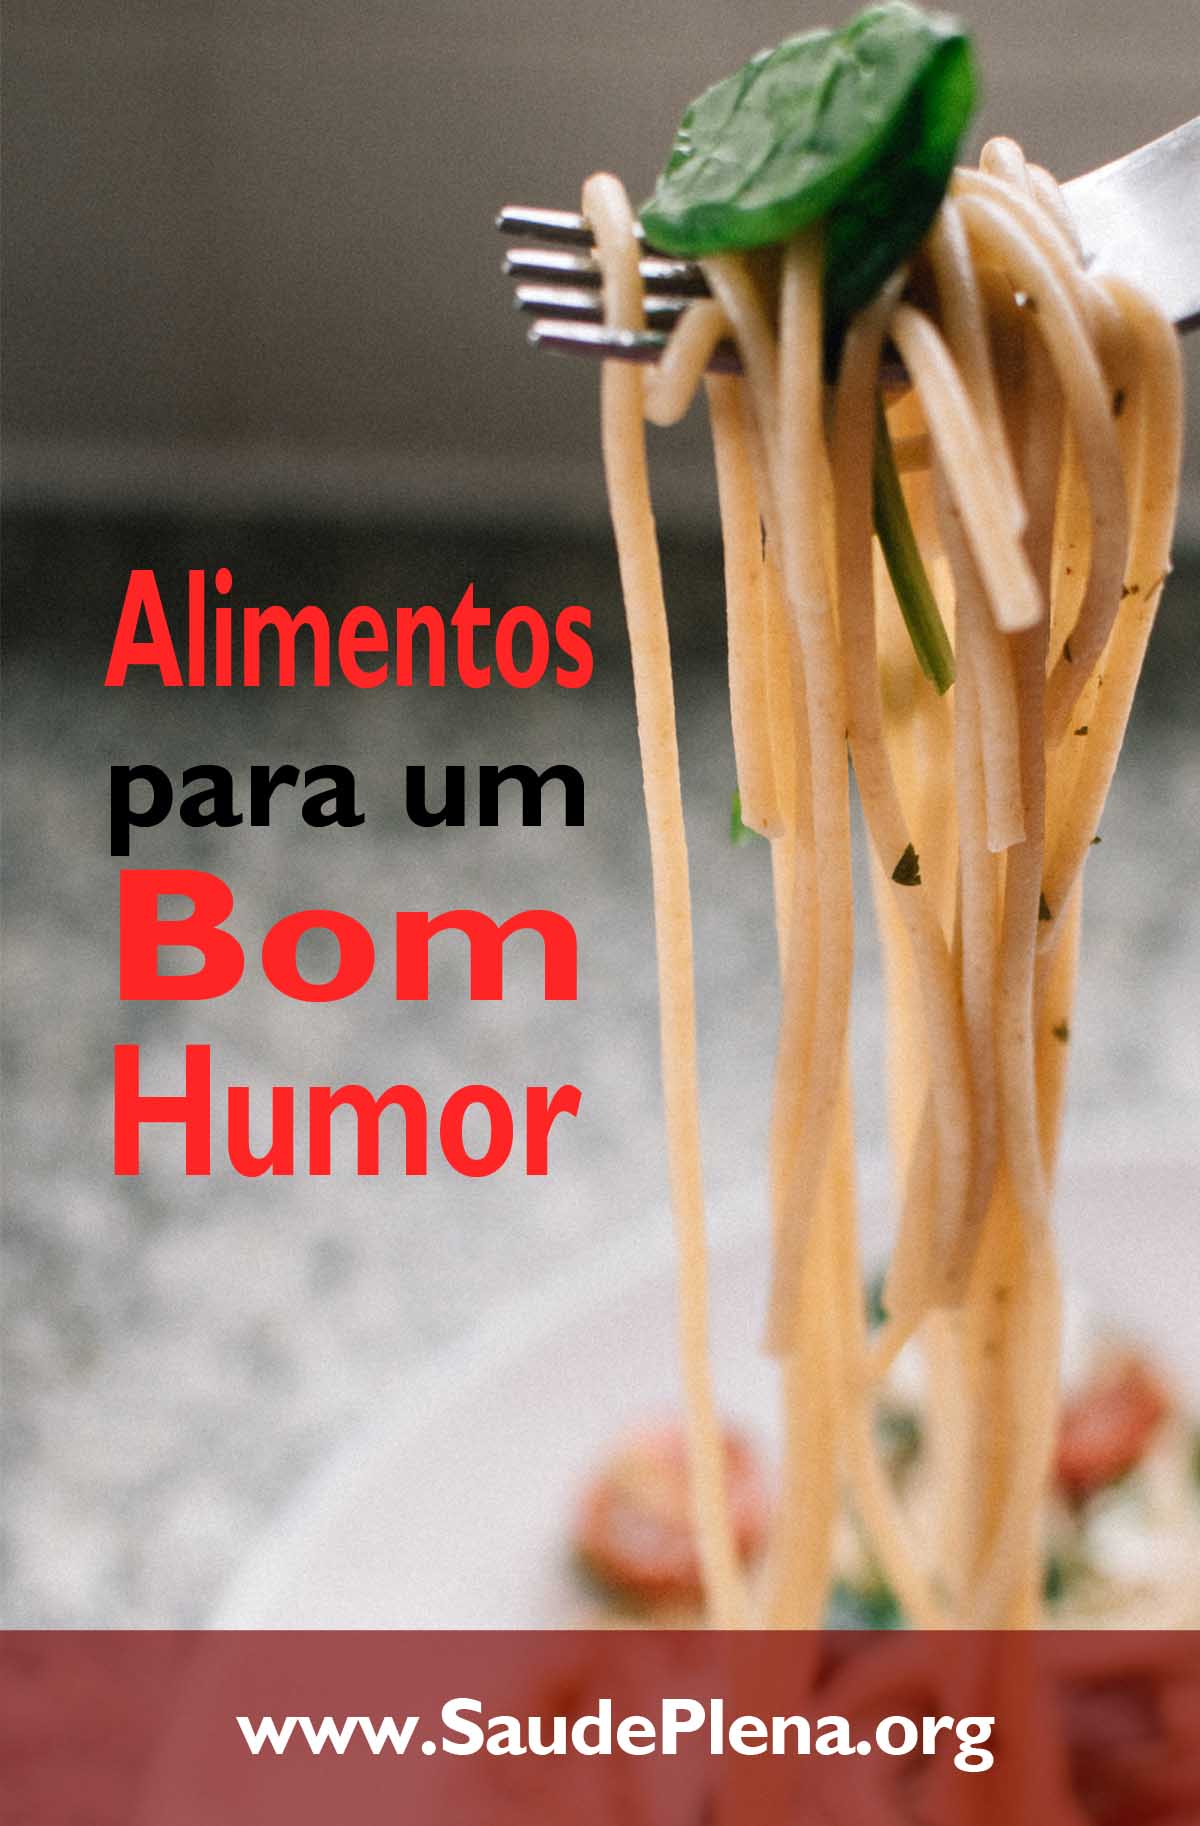 Alimentos para um Bom Humor